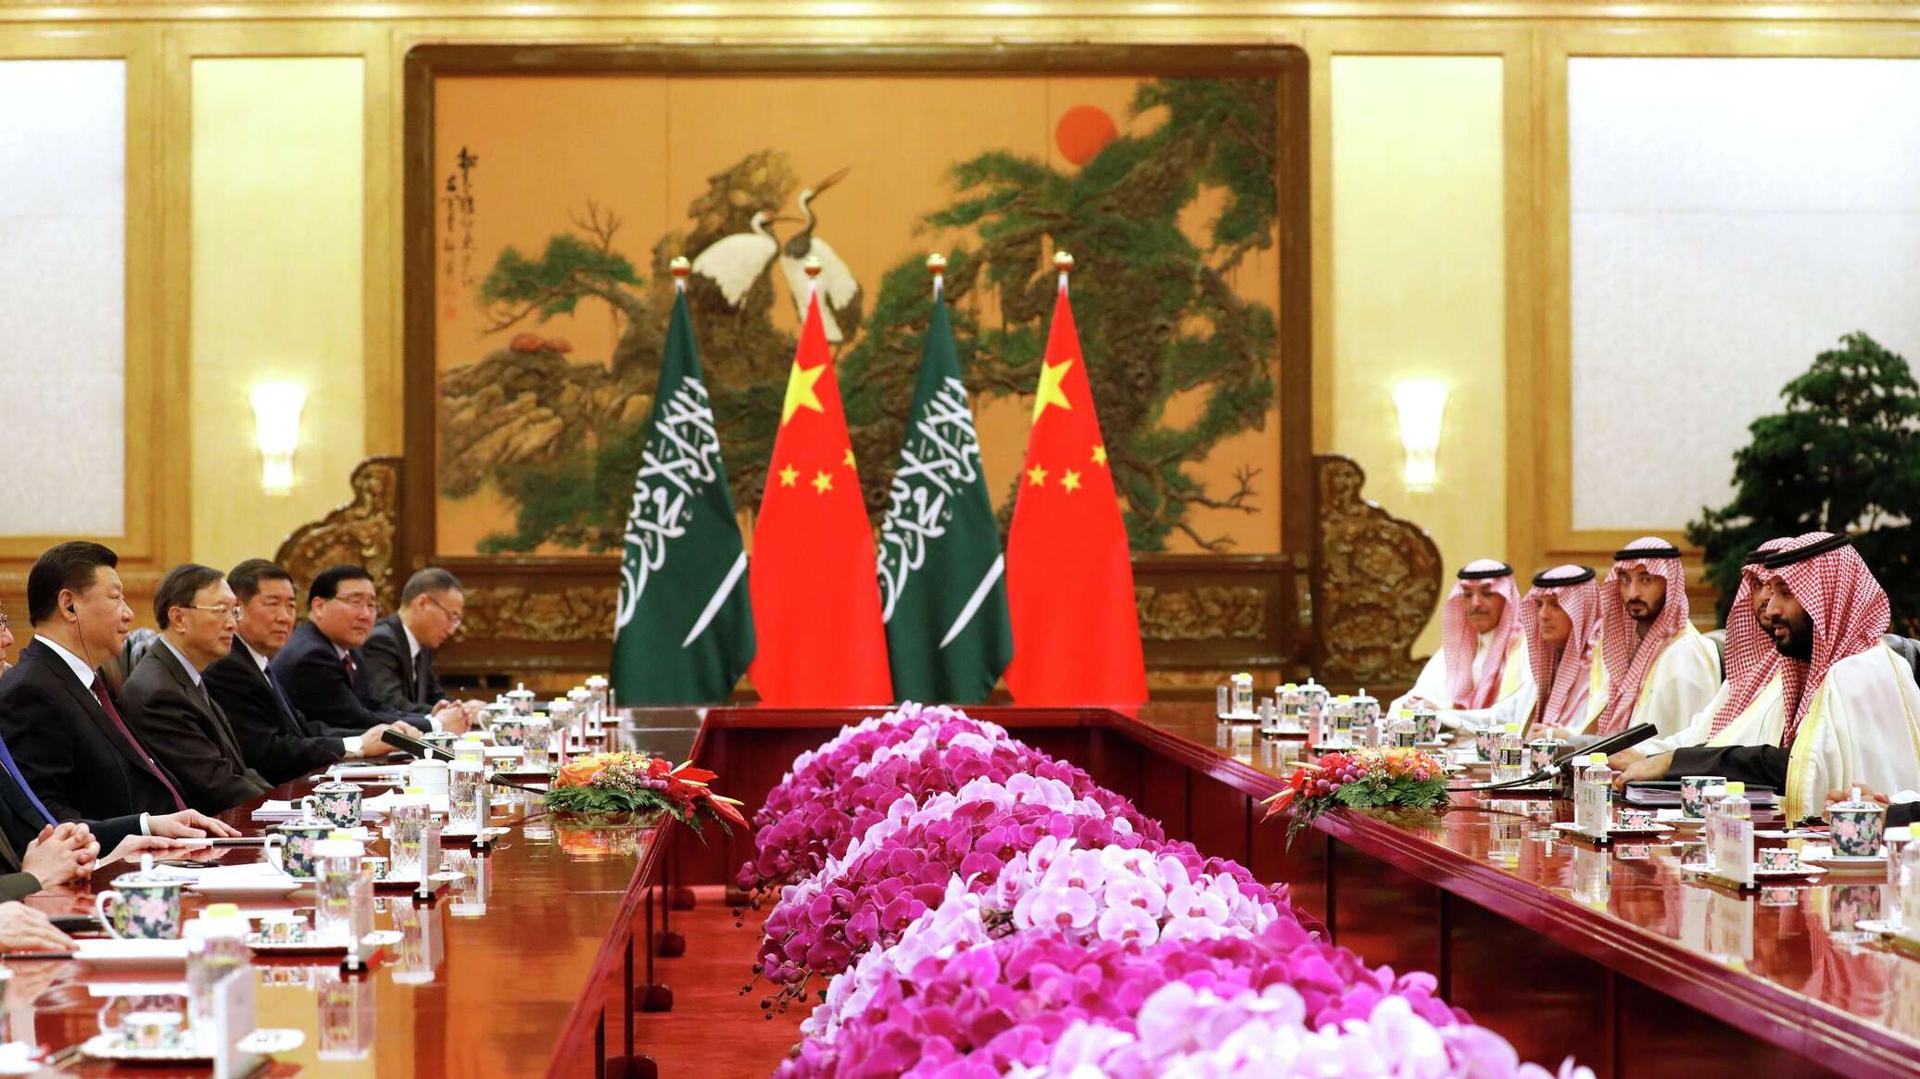 وزارة الدفاع الصينية: مستعدون للتعاون مع الجيوش العربية لحفظ الأمن العالمي